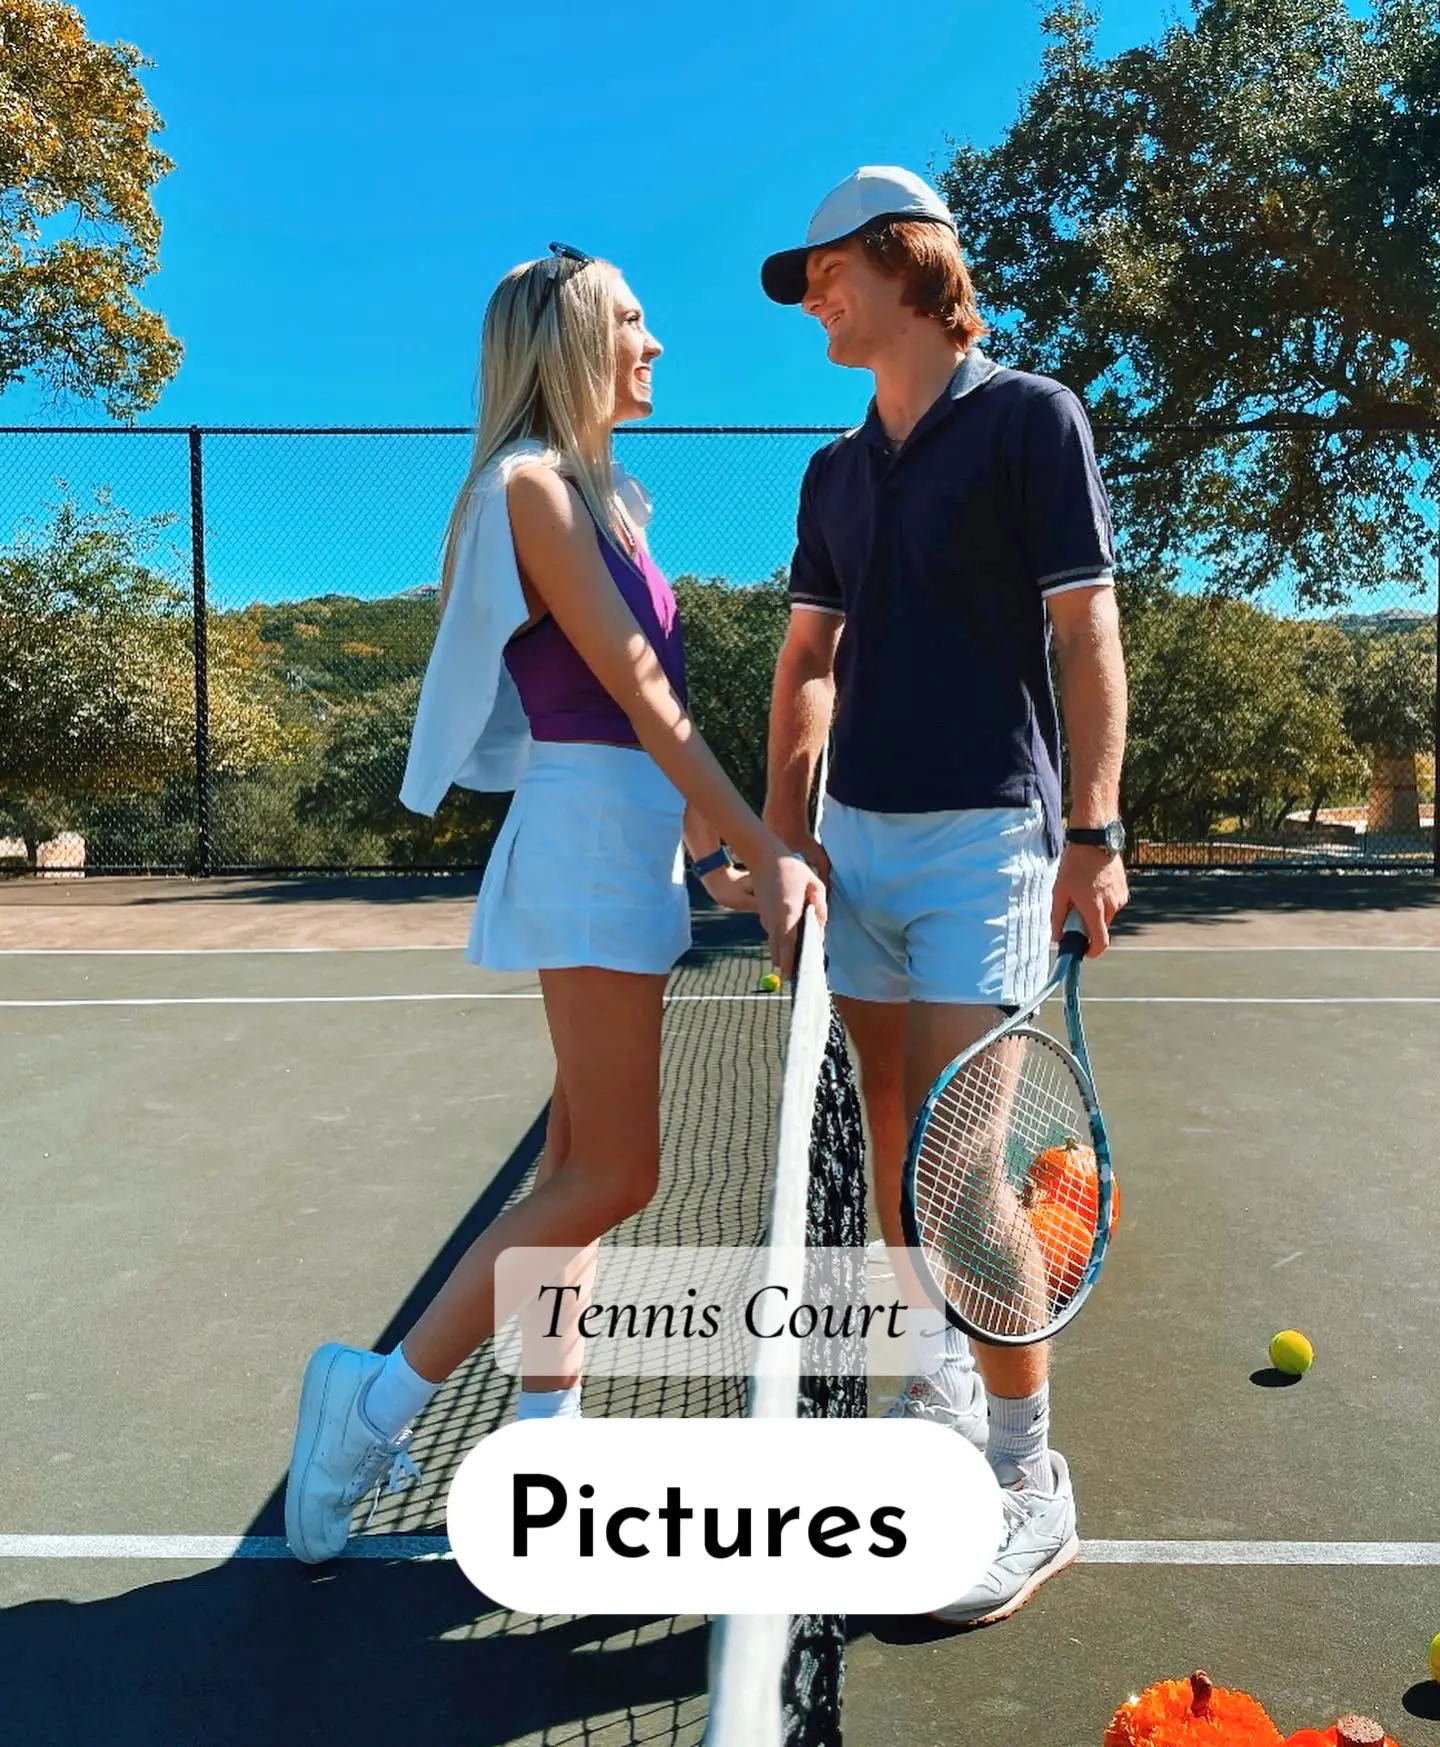 danny stuart recommends Tennis Court Photoshoot